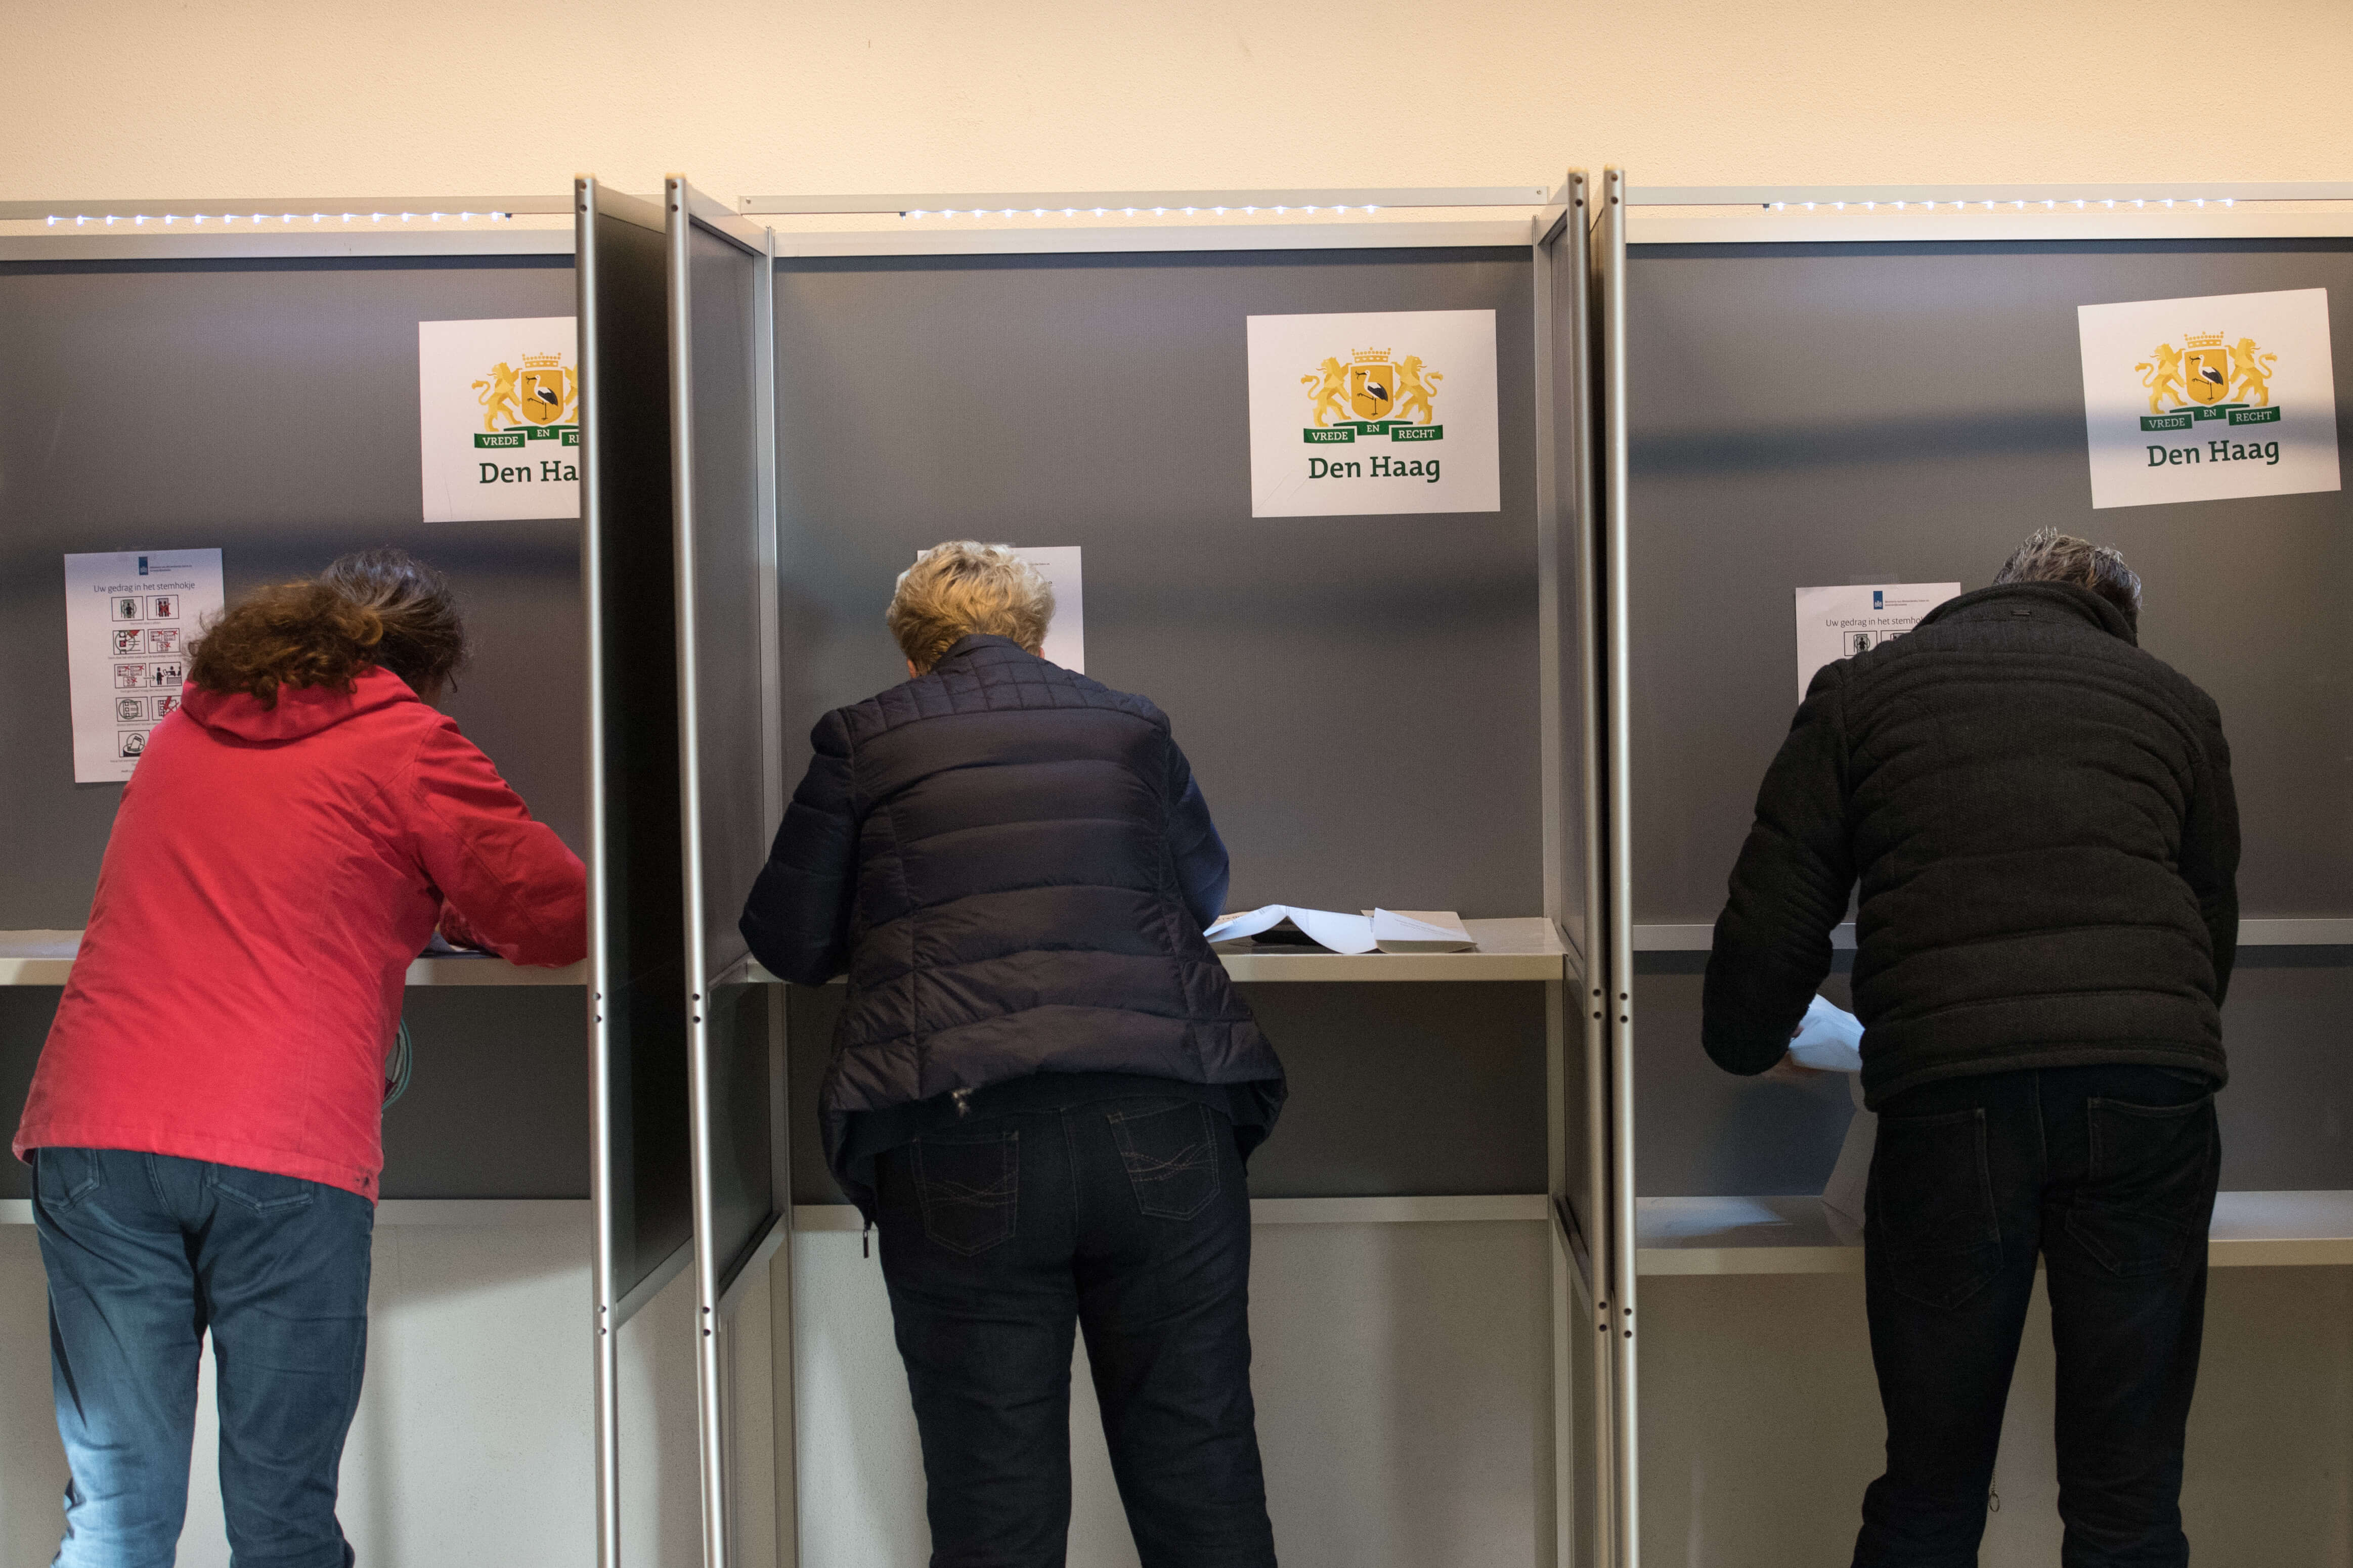 Los holandeses emitieron su voto en las elecciones parlamentarias celebradas en La Haya, Países Bajos. (Getty Images)